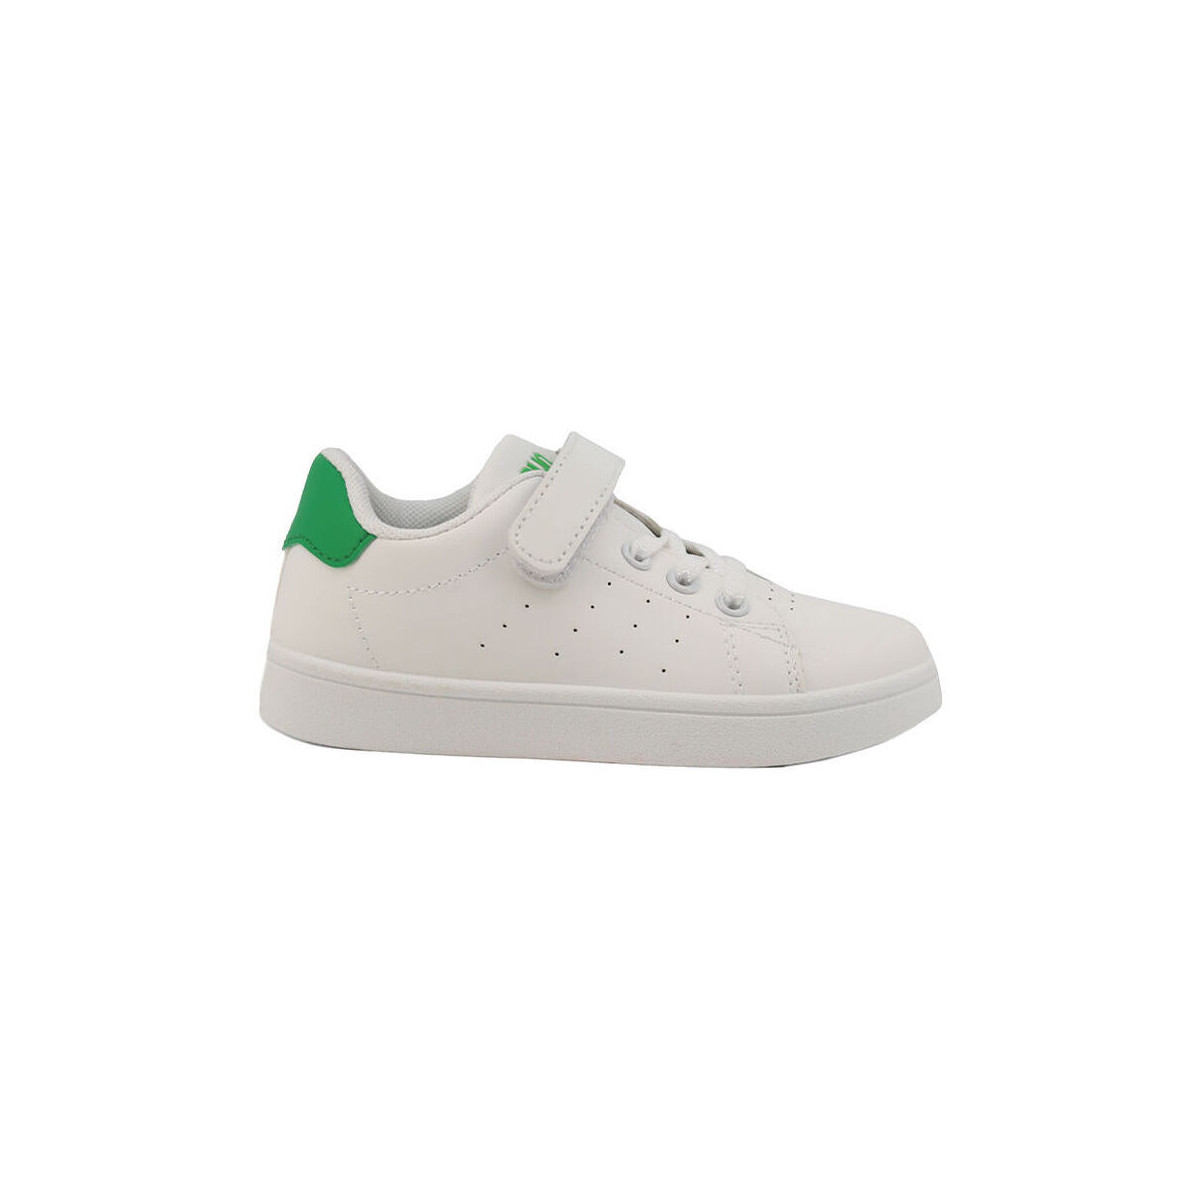 Skor Herr Sneakers Shone 001-002 White/Green Vit